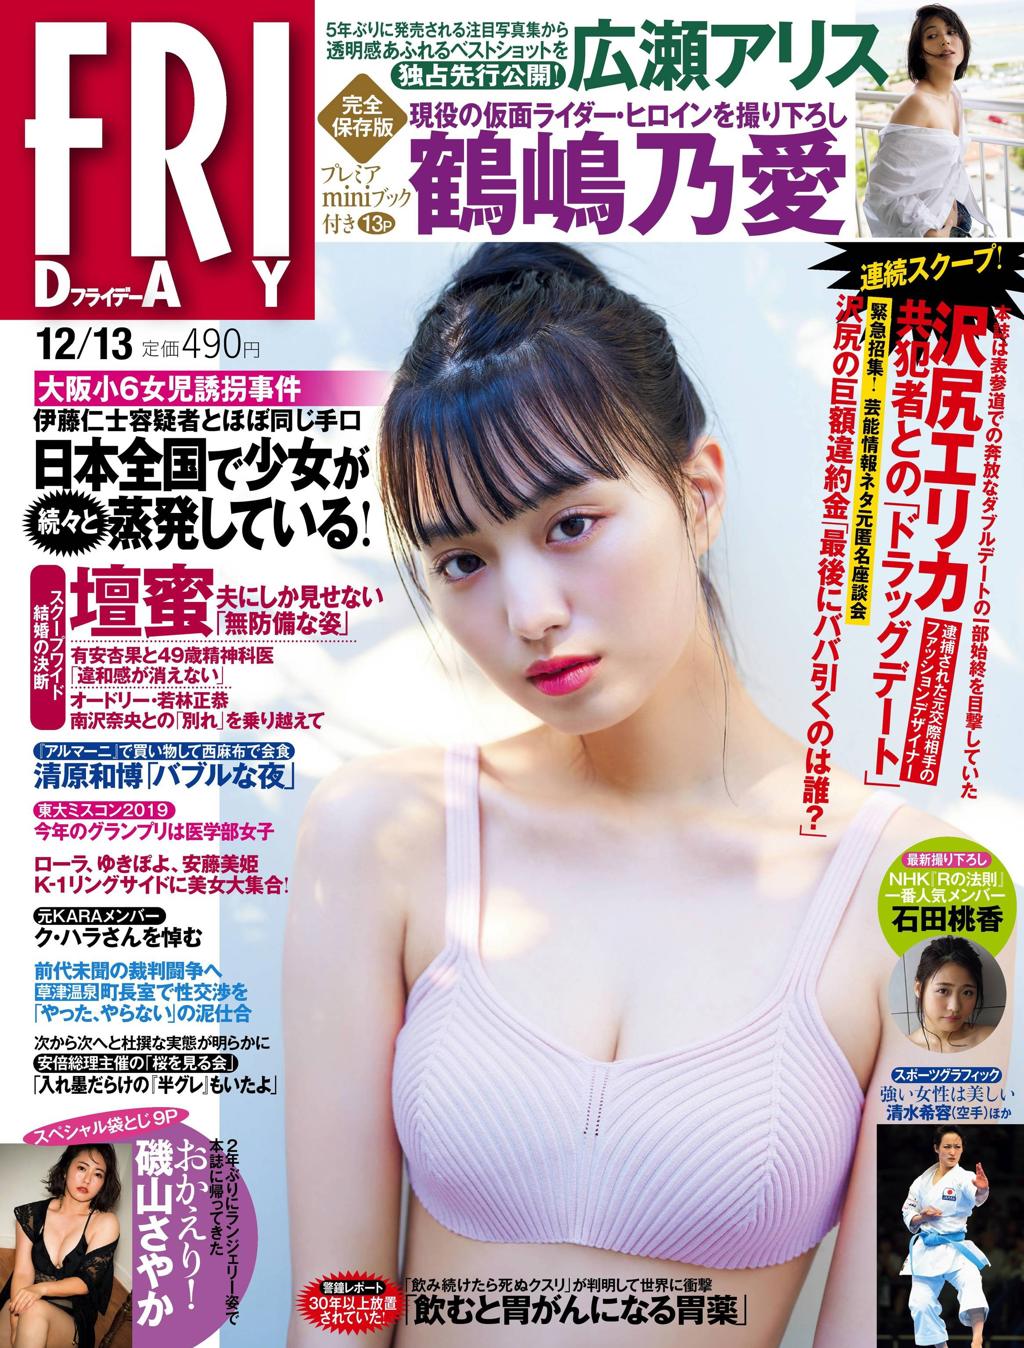 杂志[FRIDAY] 2019.12.13 (鶴嶋乃愛 広瀬アリス 石田桃香 磯山さやか)